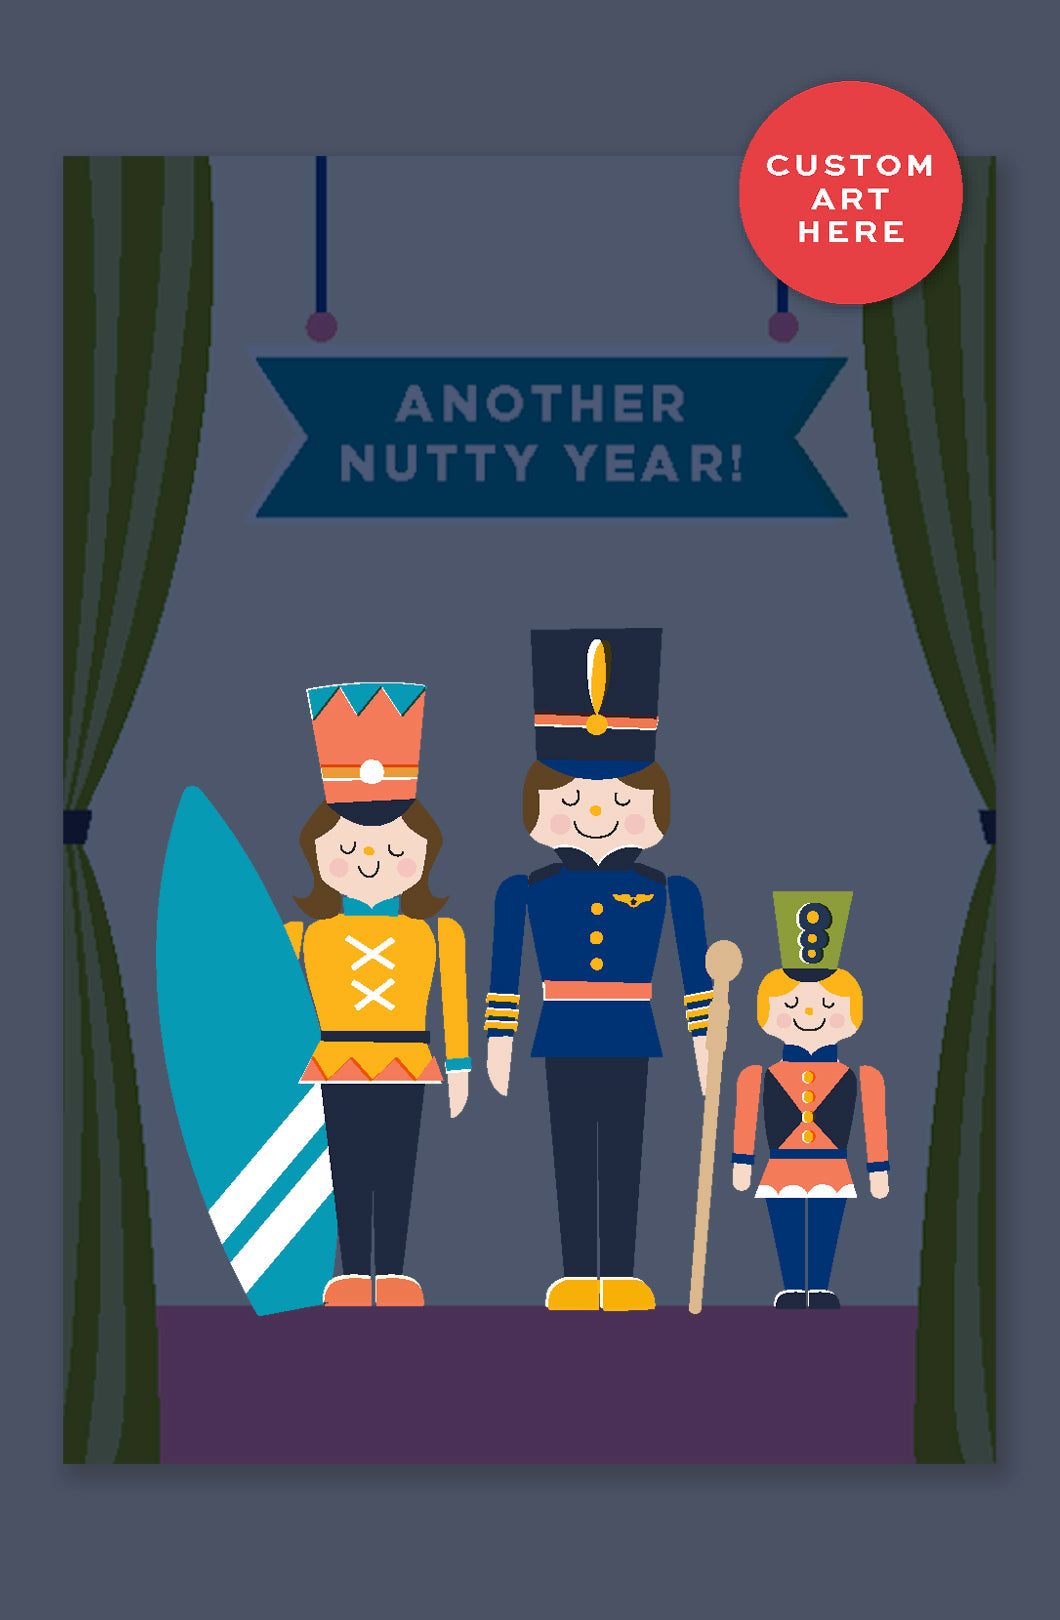 A Nutty Year